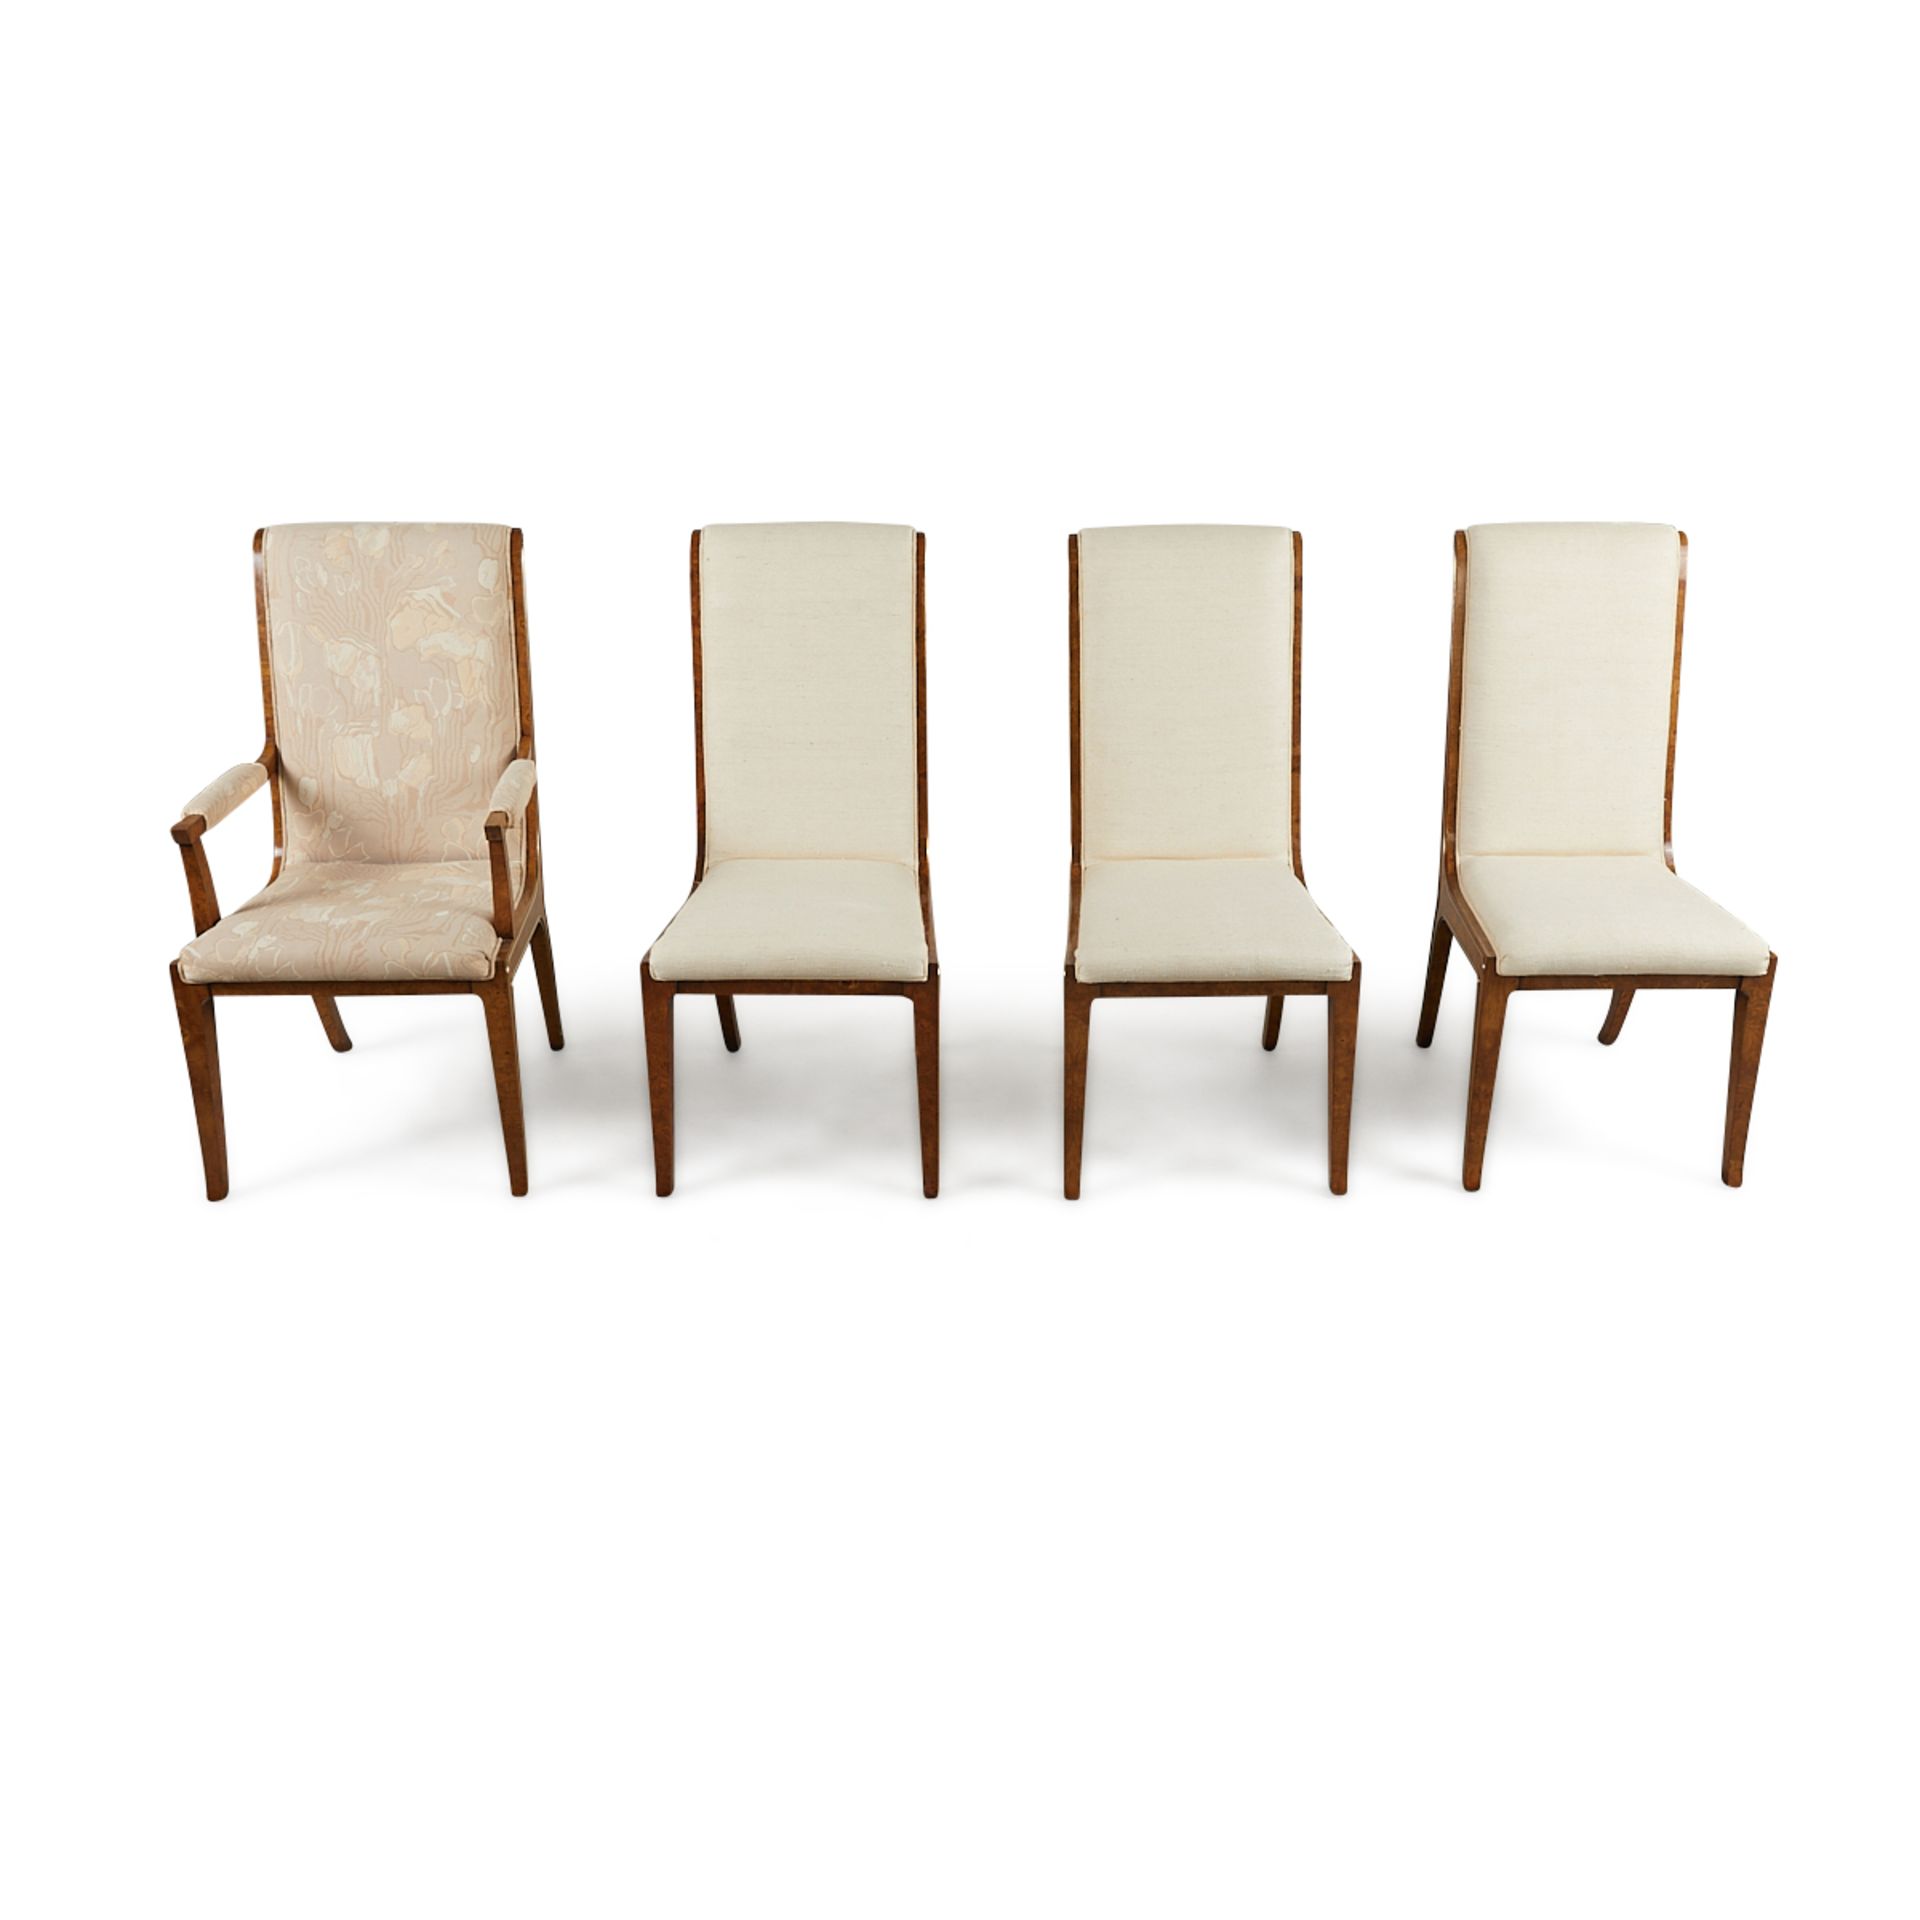 Set 8 Bernhard Rohne MasterCraft Burled Chairs - Image 8 of 24